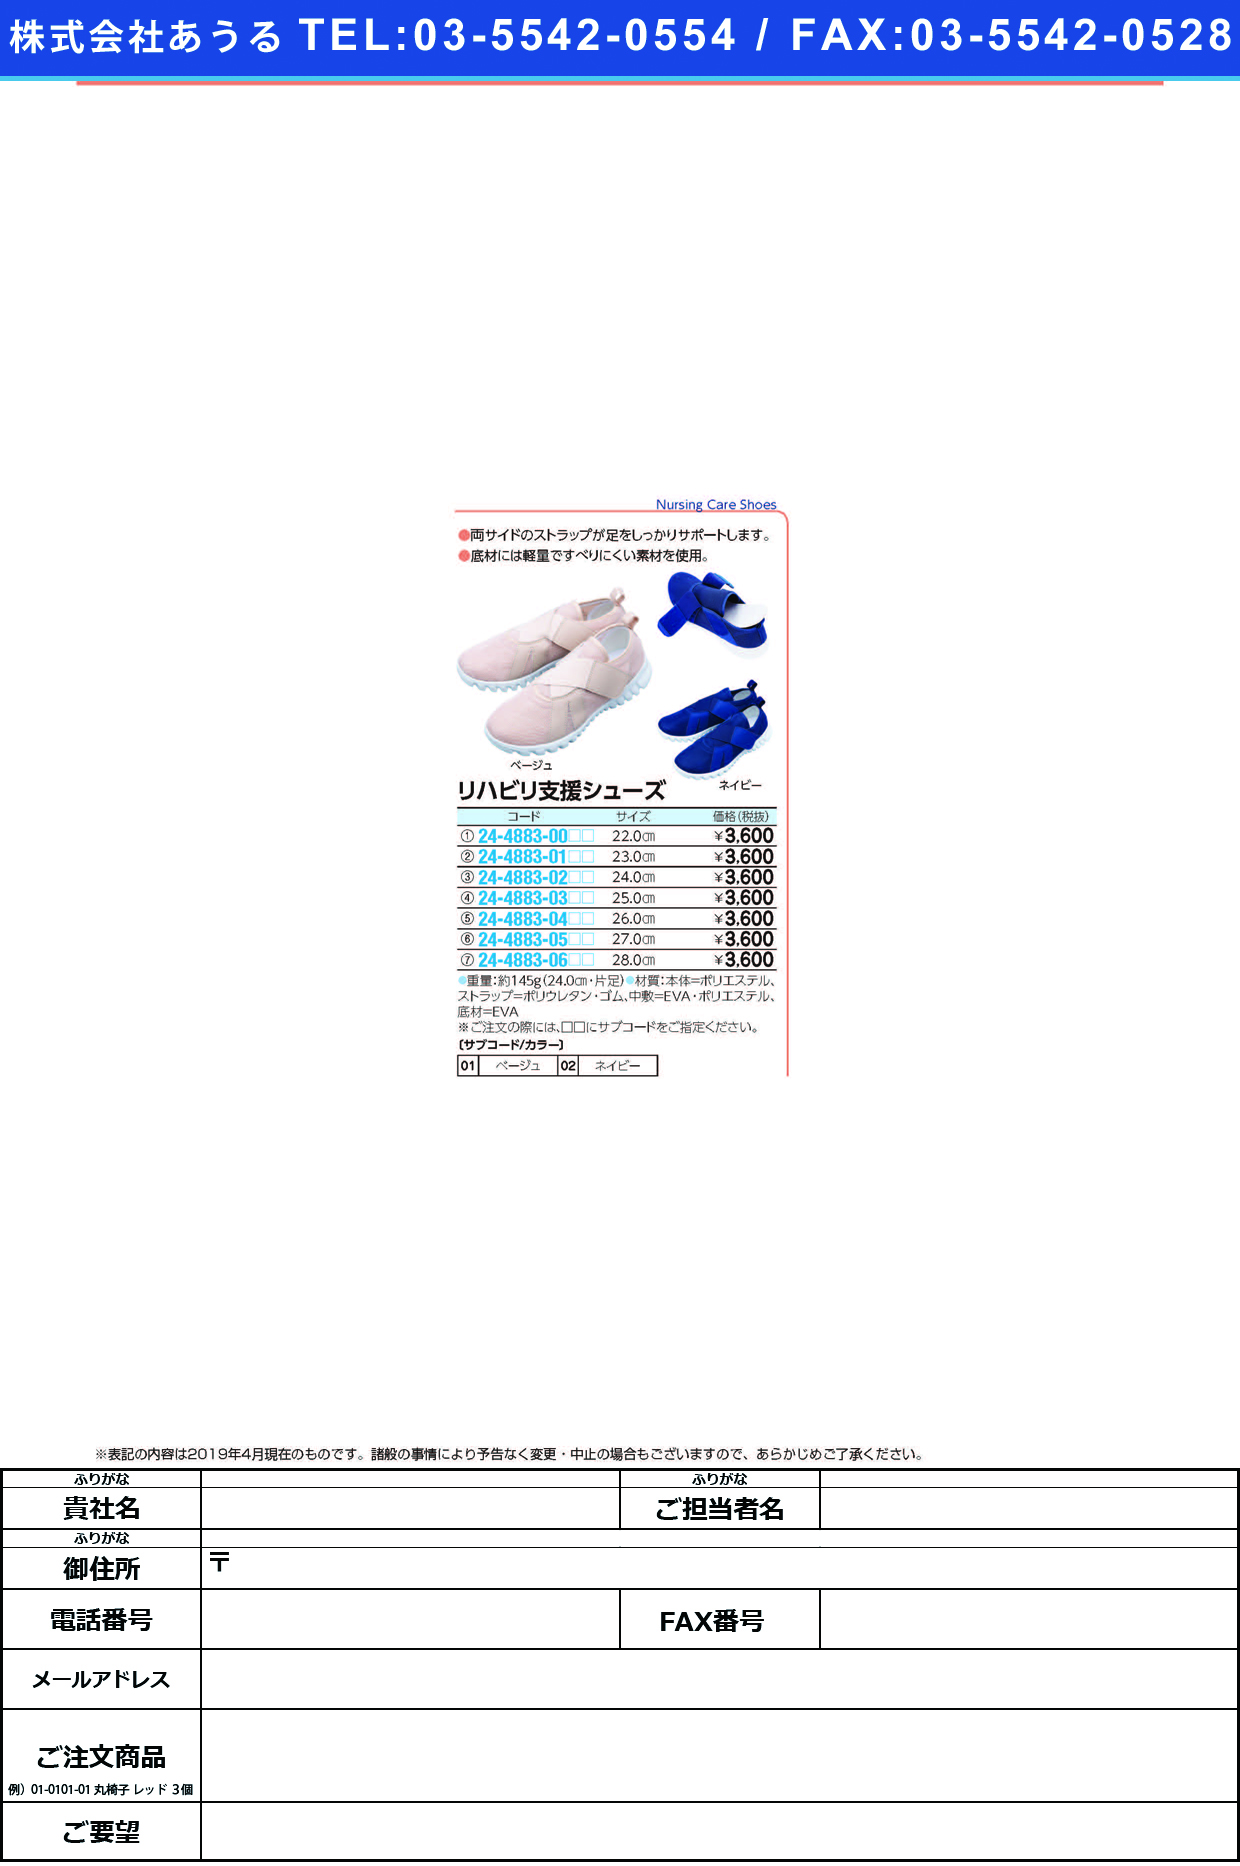 (24-4883-01)リハビリ支援シューズ 23.0CM ﾘﾊﾋﾞﾘｼｴﾝｼｭｰｽﾞ ベージュ【1足単位】【2019年カタログ商品】